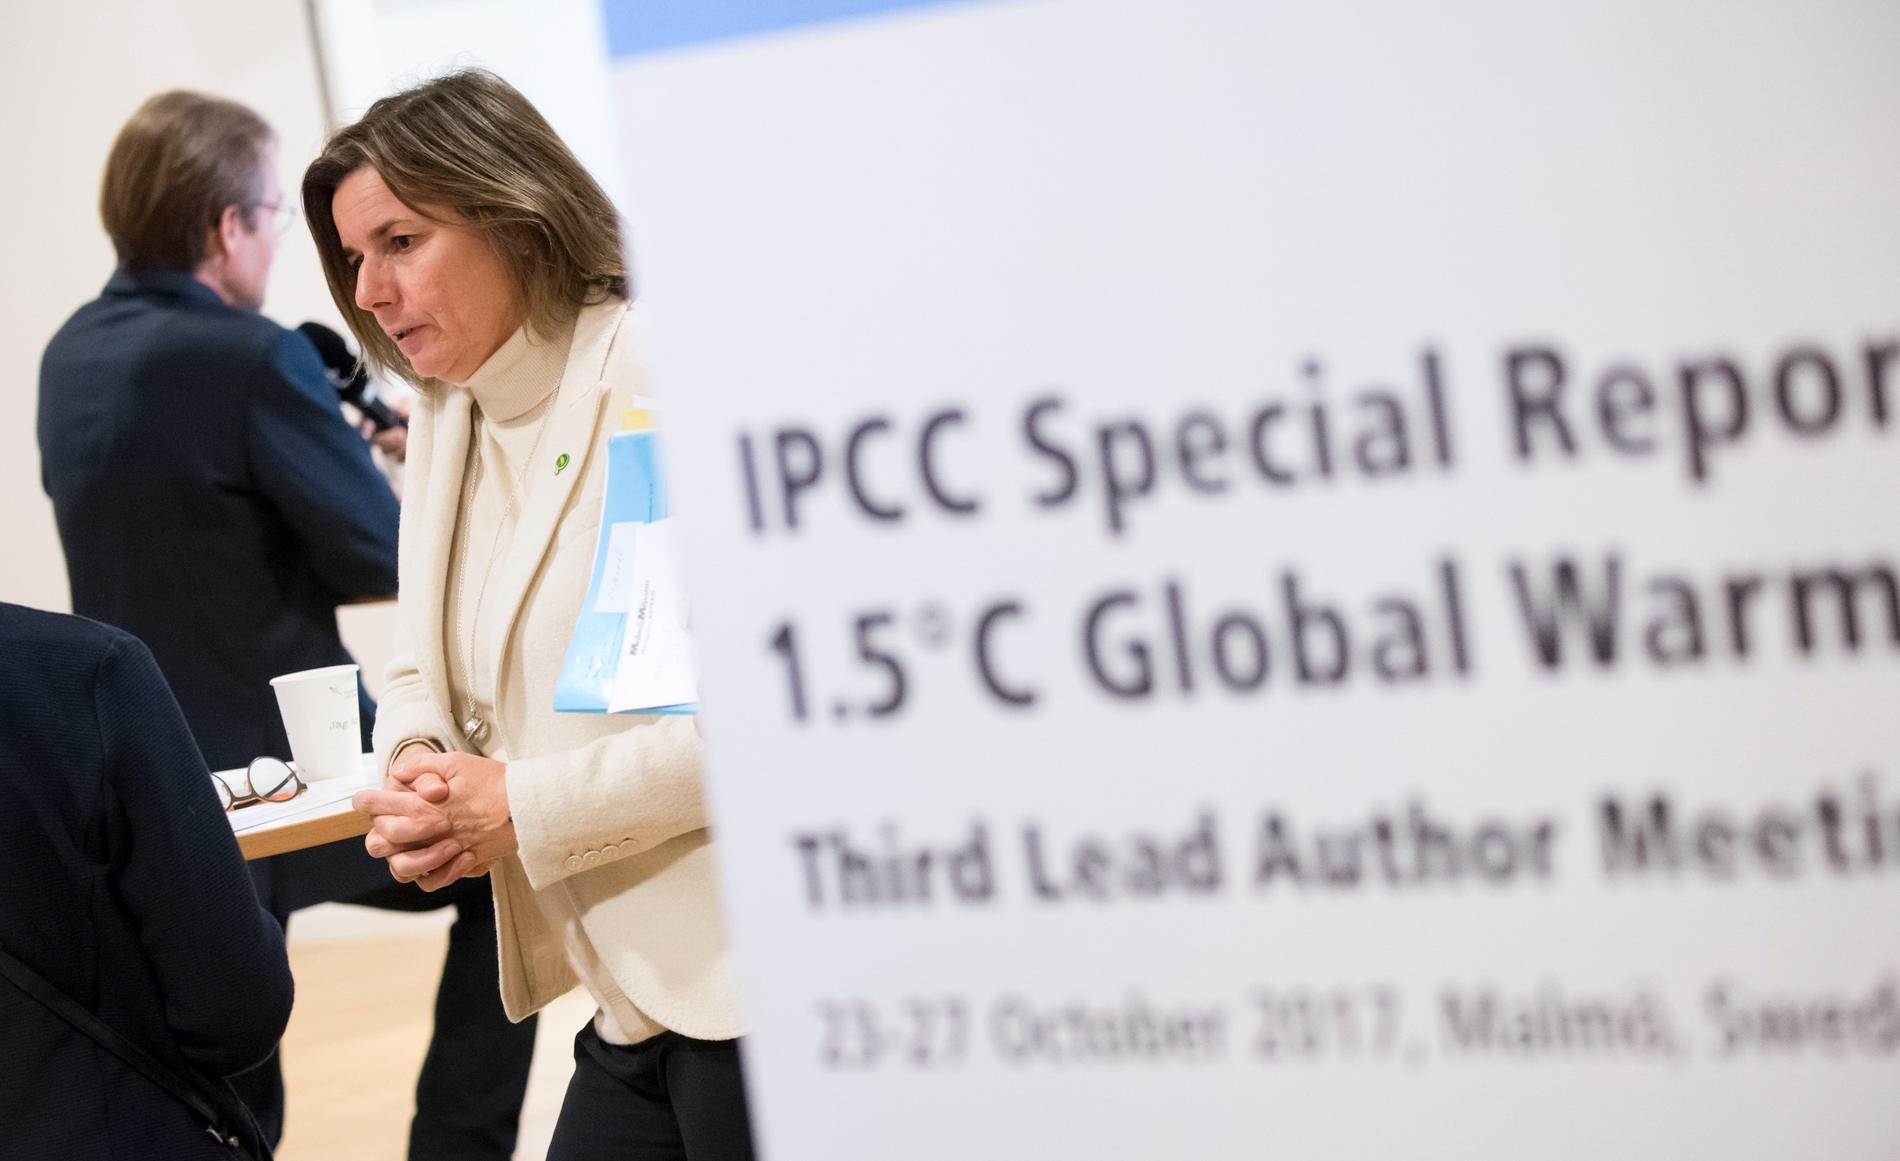 Isabella Lövin, minister för internationellt utvecklingssamarbete och klimat, på plats då IPCC:s författarmöte om 1,5 graders global uppvärmning på måndagen inleddes på Malmömässan i Hyllie. Författarmötet samlar 120 internationella klimatforskare och experter från hela världen. Arkivbild.